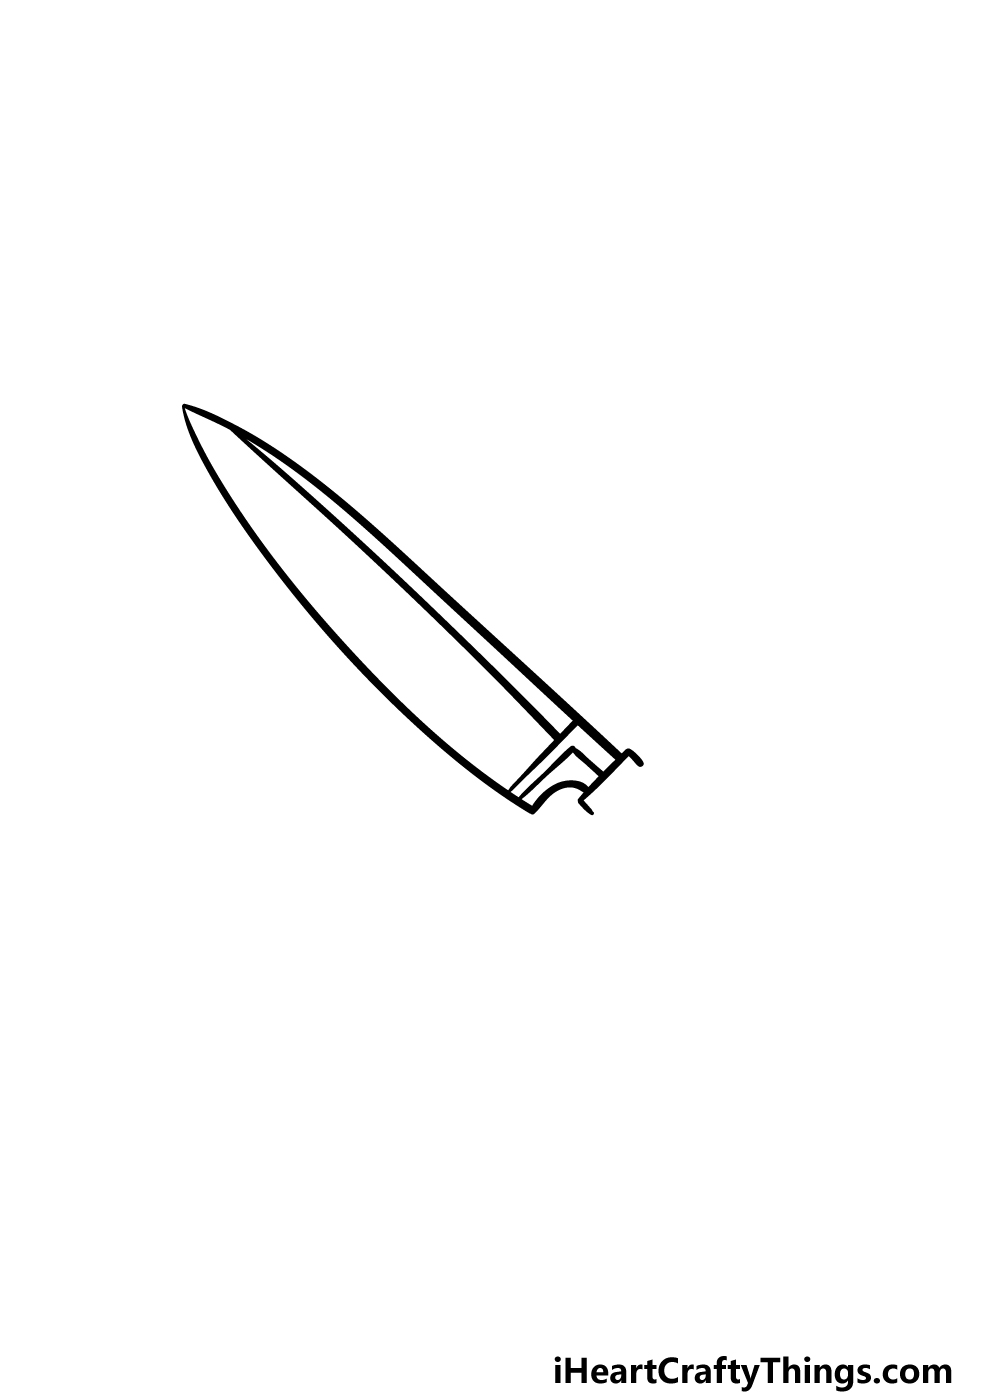 2 113 - Hướng dẫn cách vẽ con dao đơn giản với 6 bước cơ bản